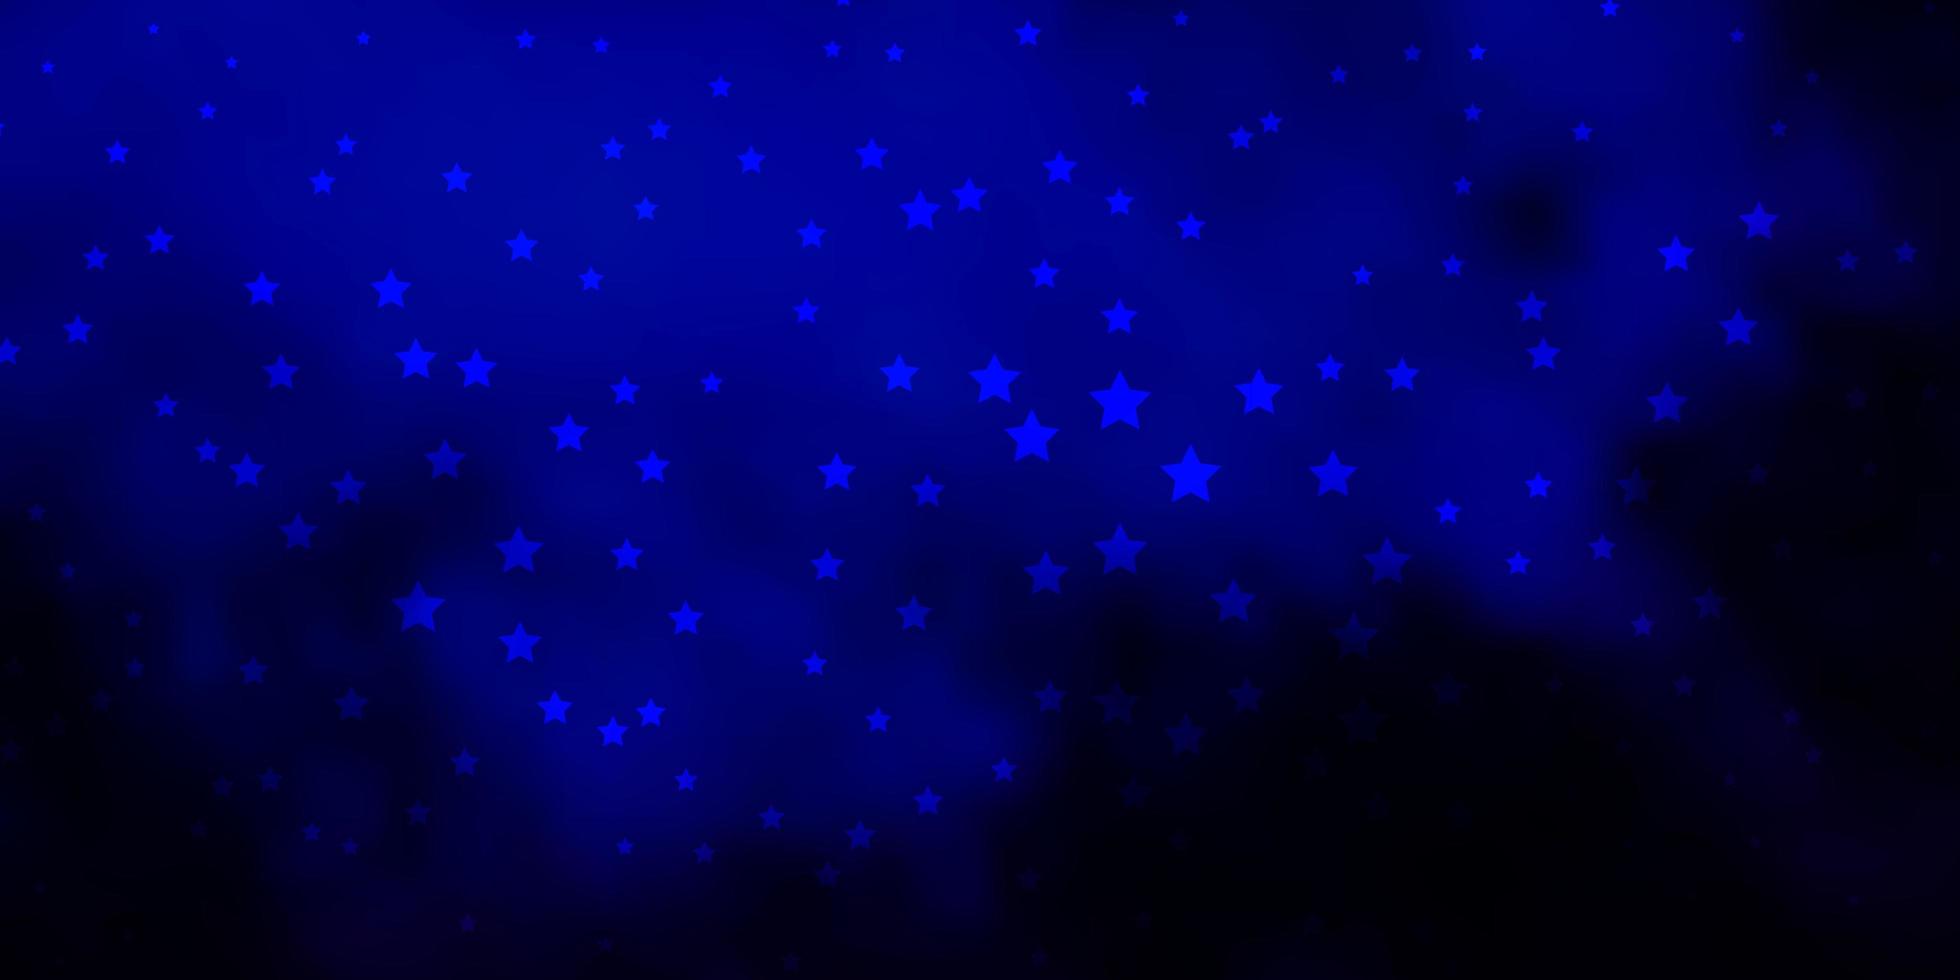 sfondo vettoriale blu scuro con stelle colorate.